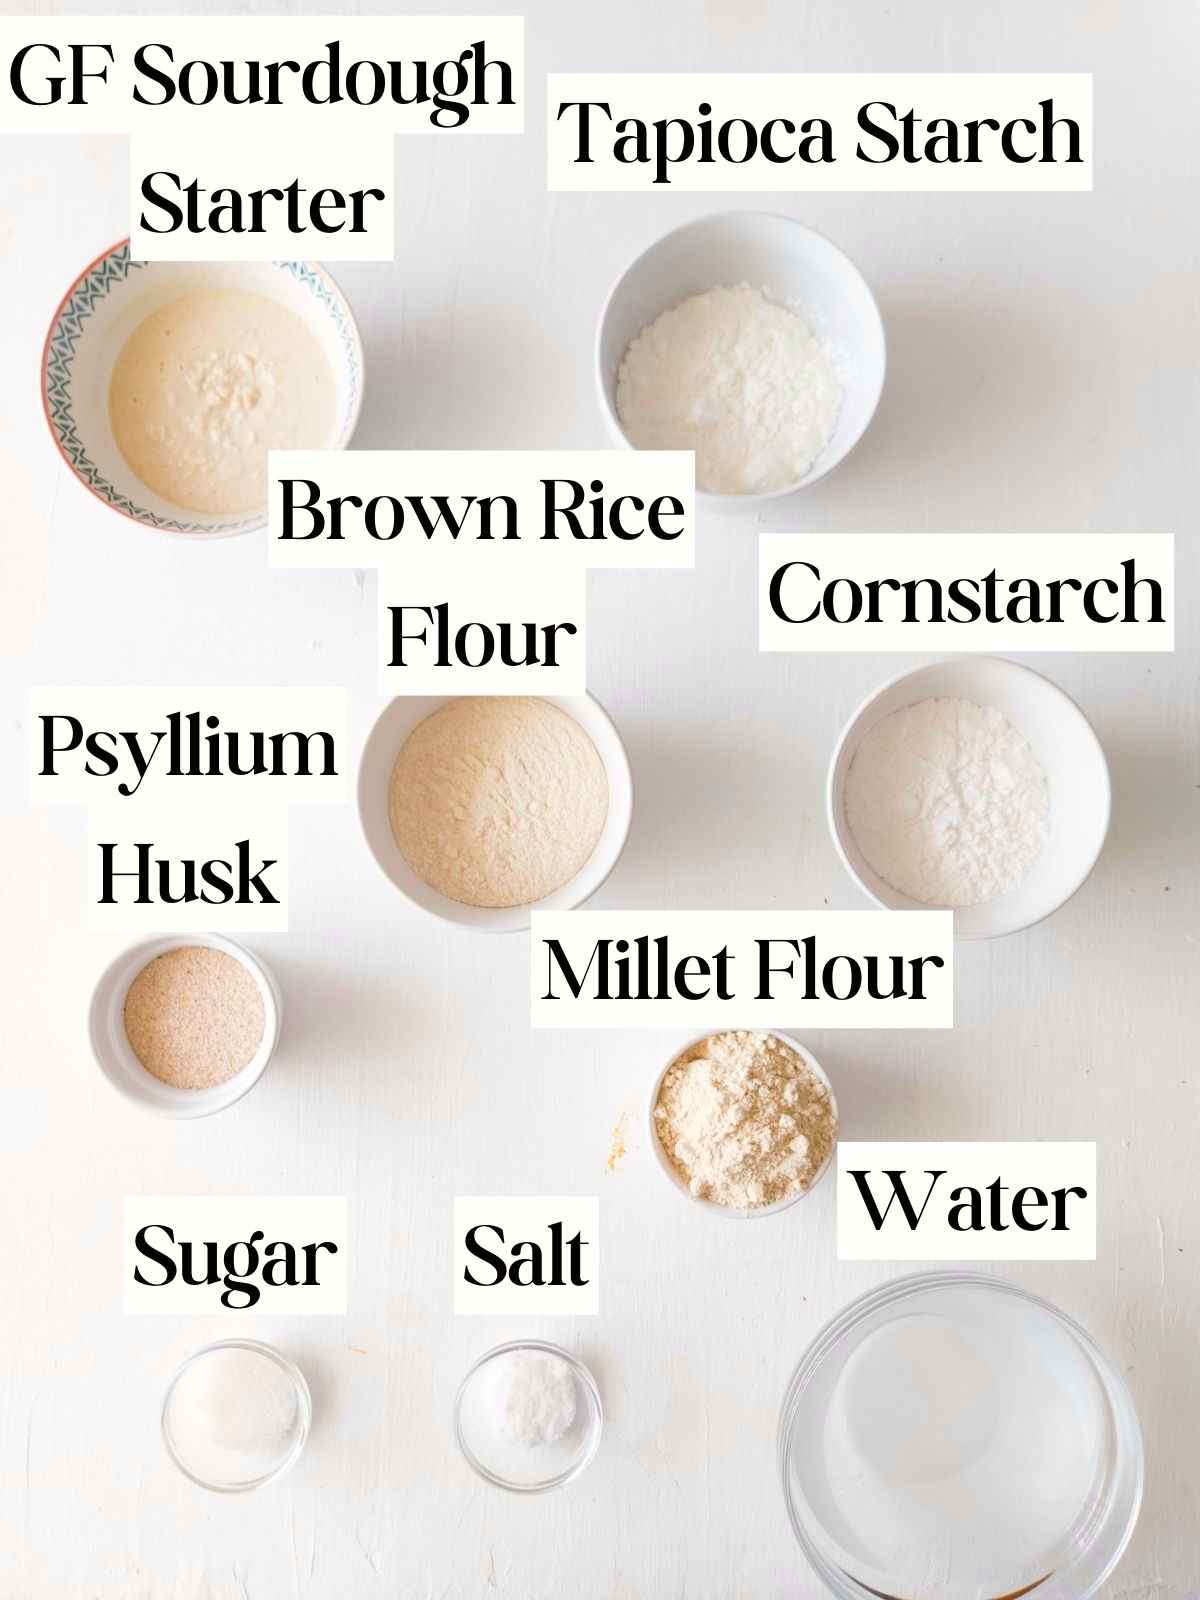 Ingredients for gluten-free sourdough bread in little bowls.